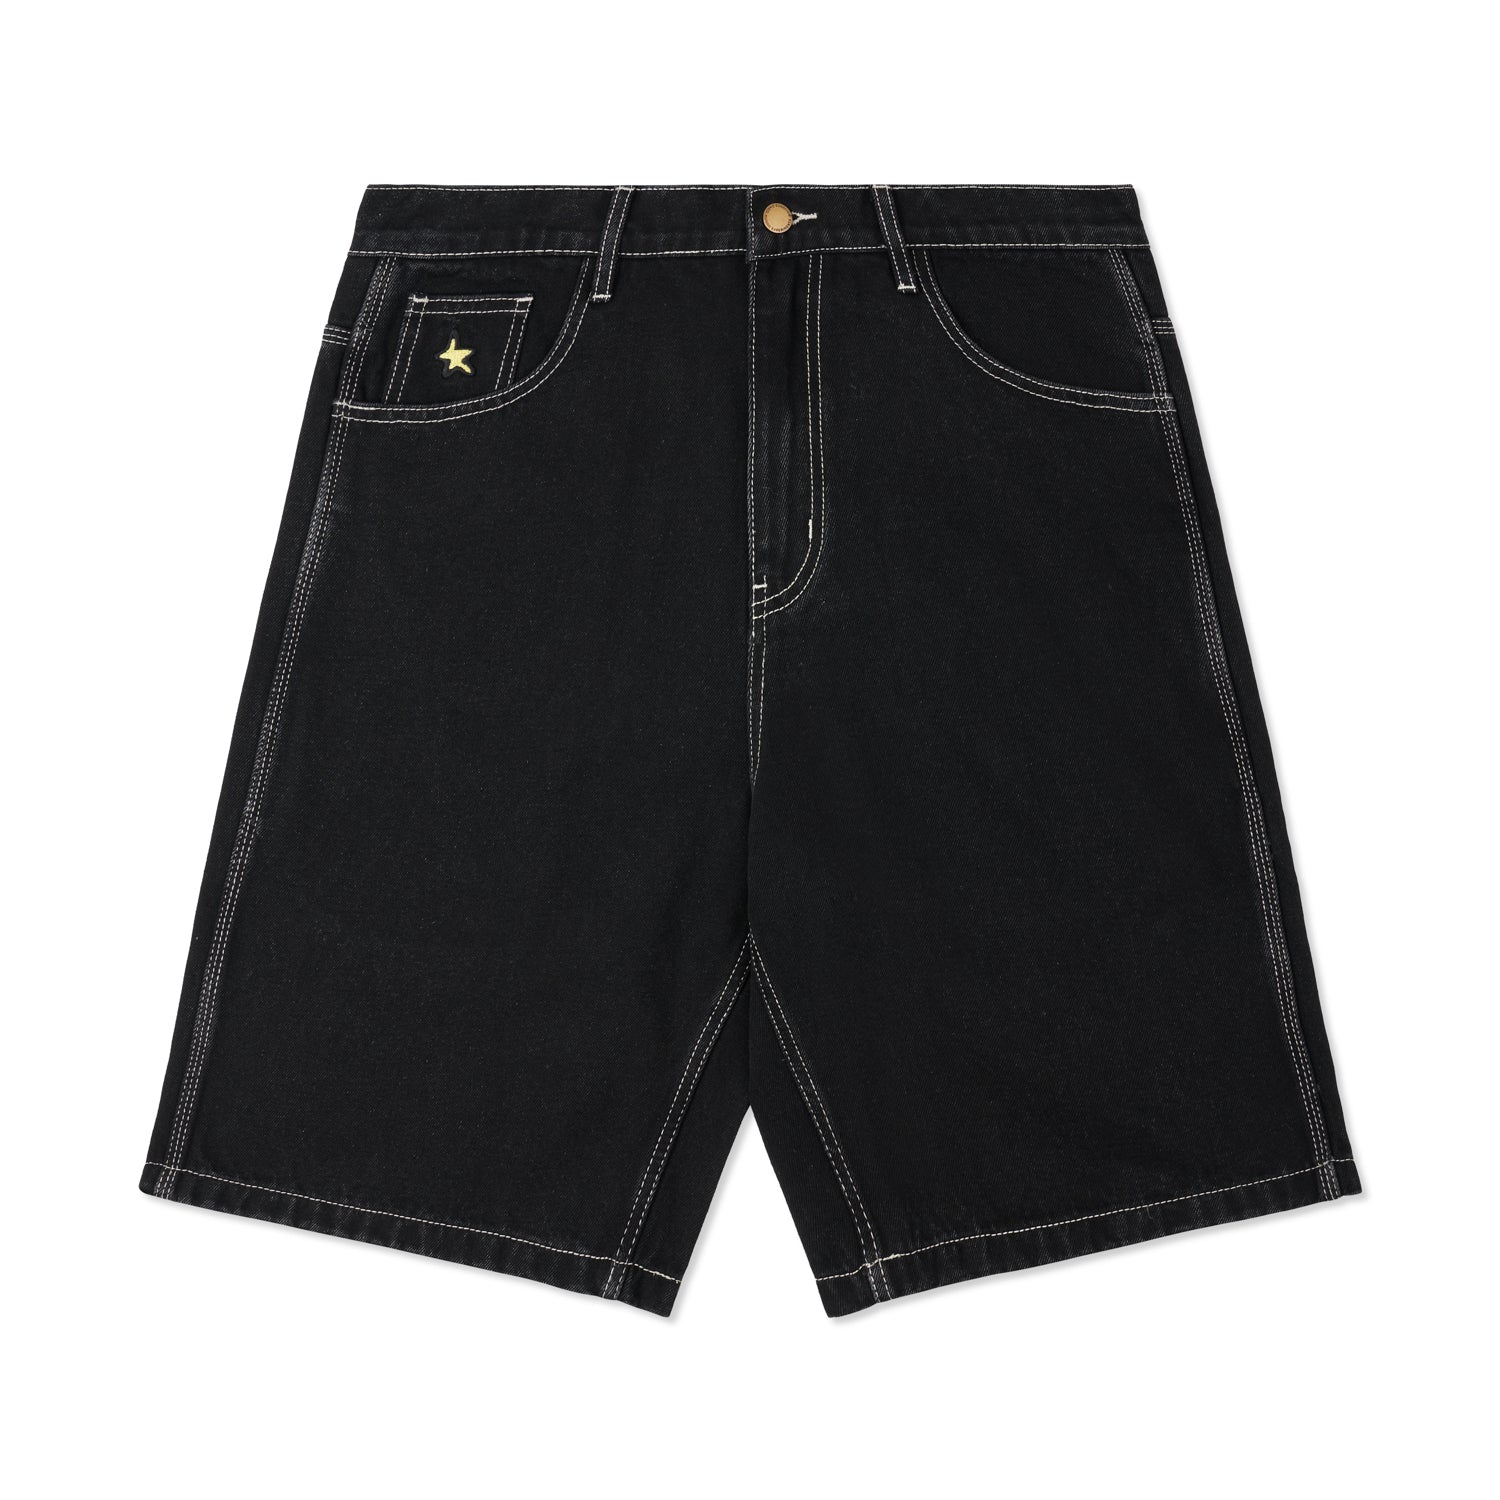 OJCGM Denim Shorts, Washed Black